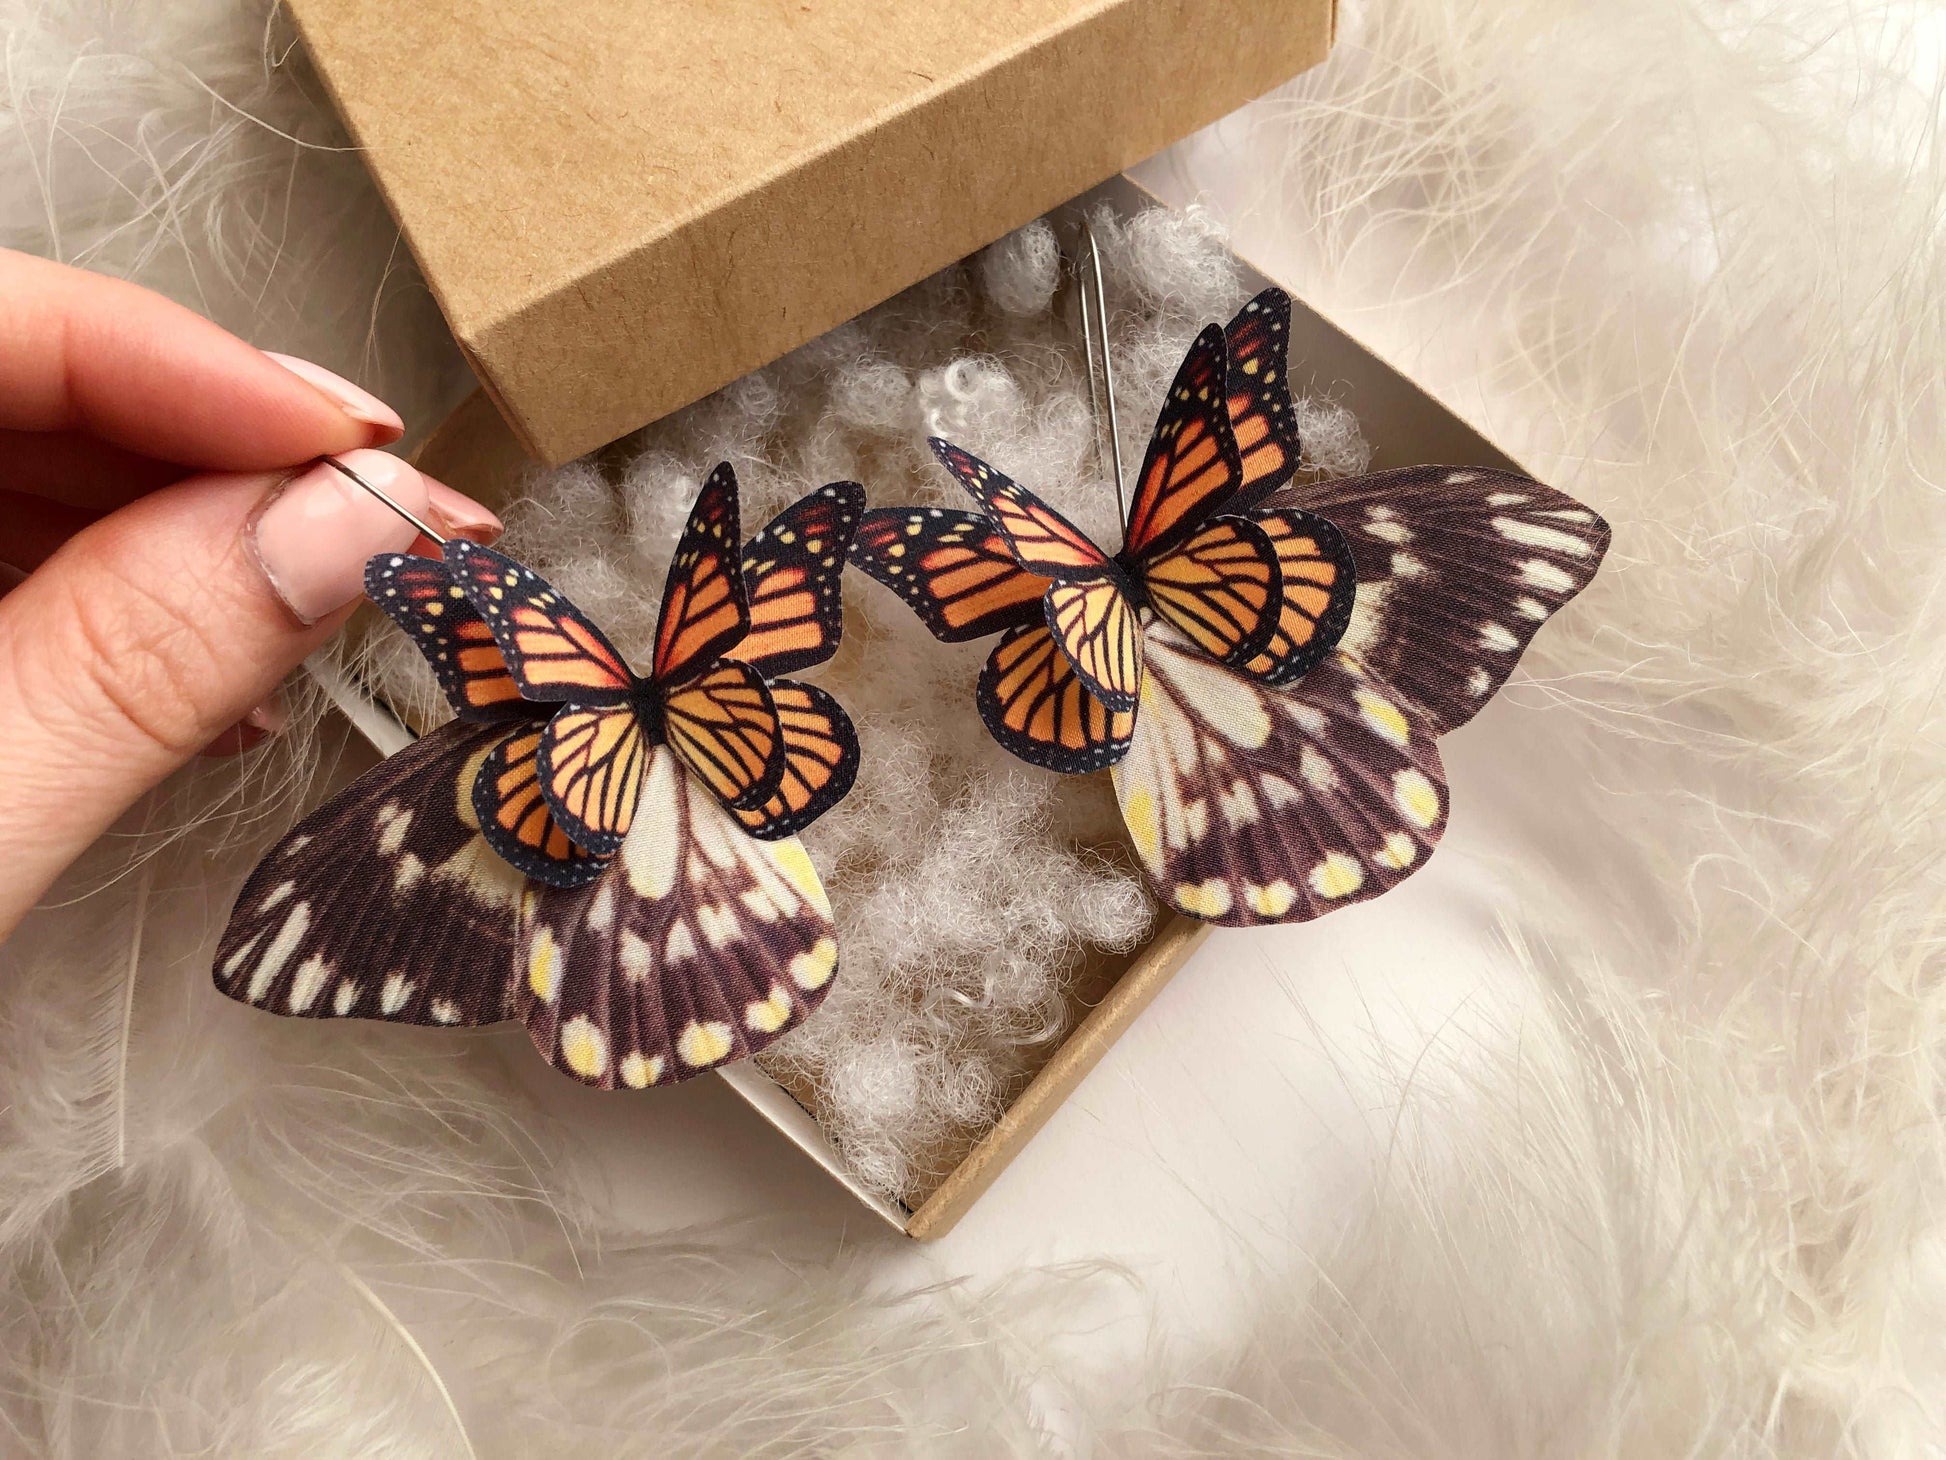 Unique butterfly earrings, a meaningful gift idea